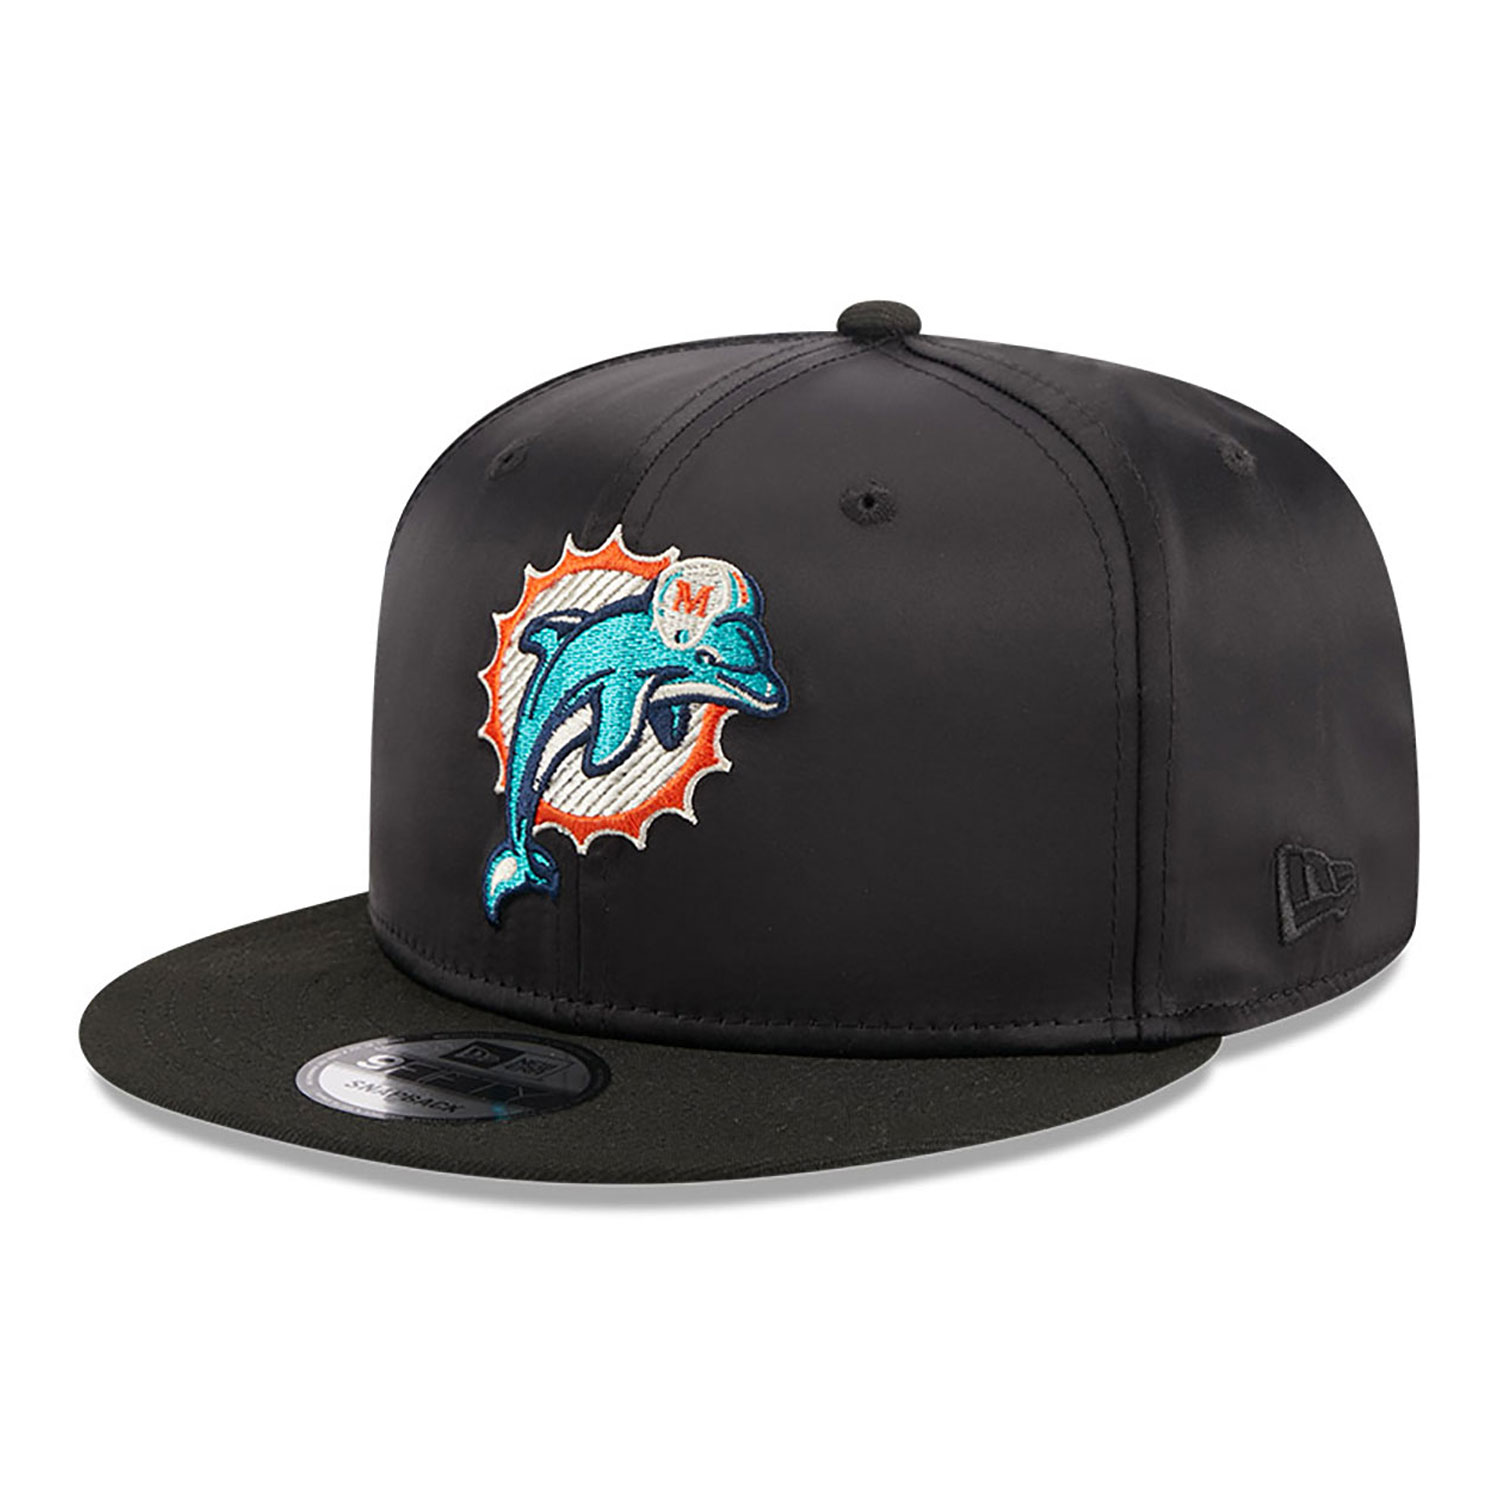 Miami Dolphins Satin Black 9FIFTY Snapback Cap